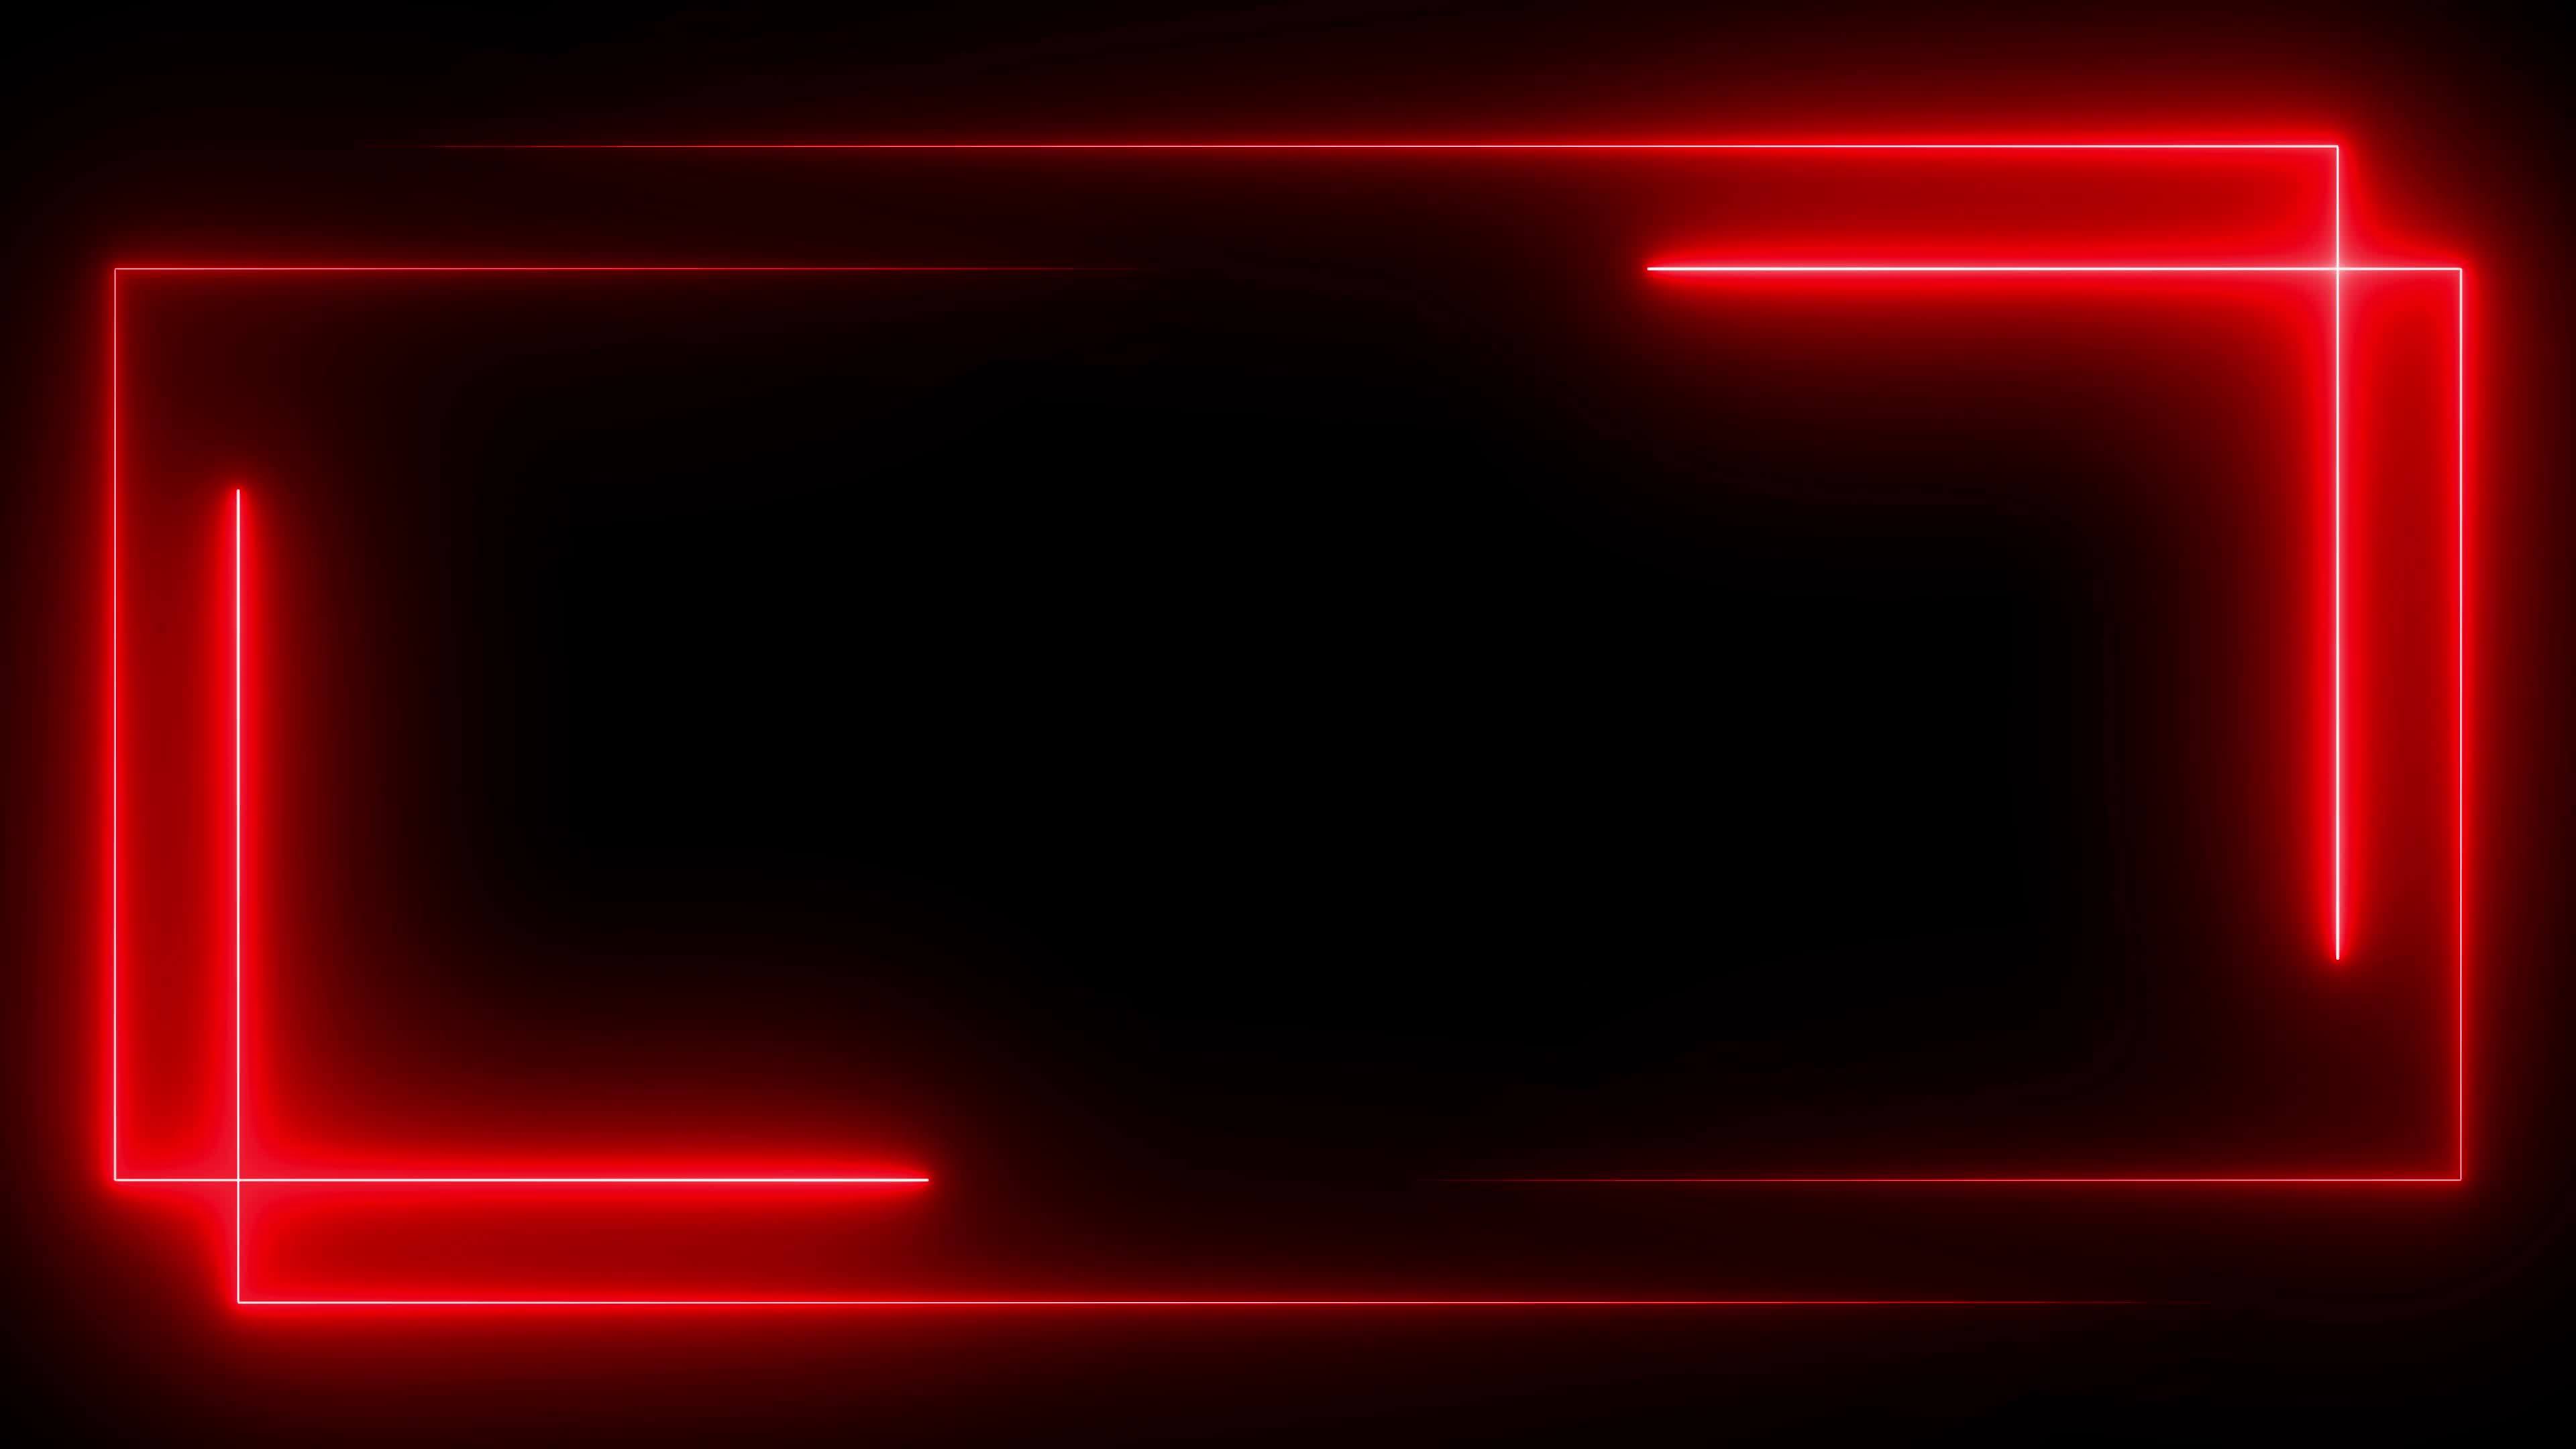 Những đèn neon đỏ phát sáng trên nền đen tạo nên một khung cảnh đầy lôi cuốn và bí ẩn. Hãy cùng đắm chìm trong không gian lãng mạn và táo bạo này và tìm hiểu sự kết hợp độc đáo giữa đèn neon đỏ và màu đen.